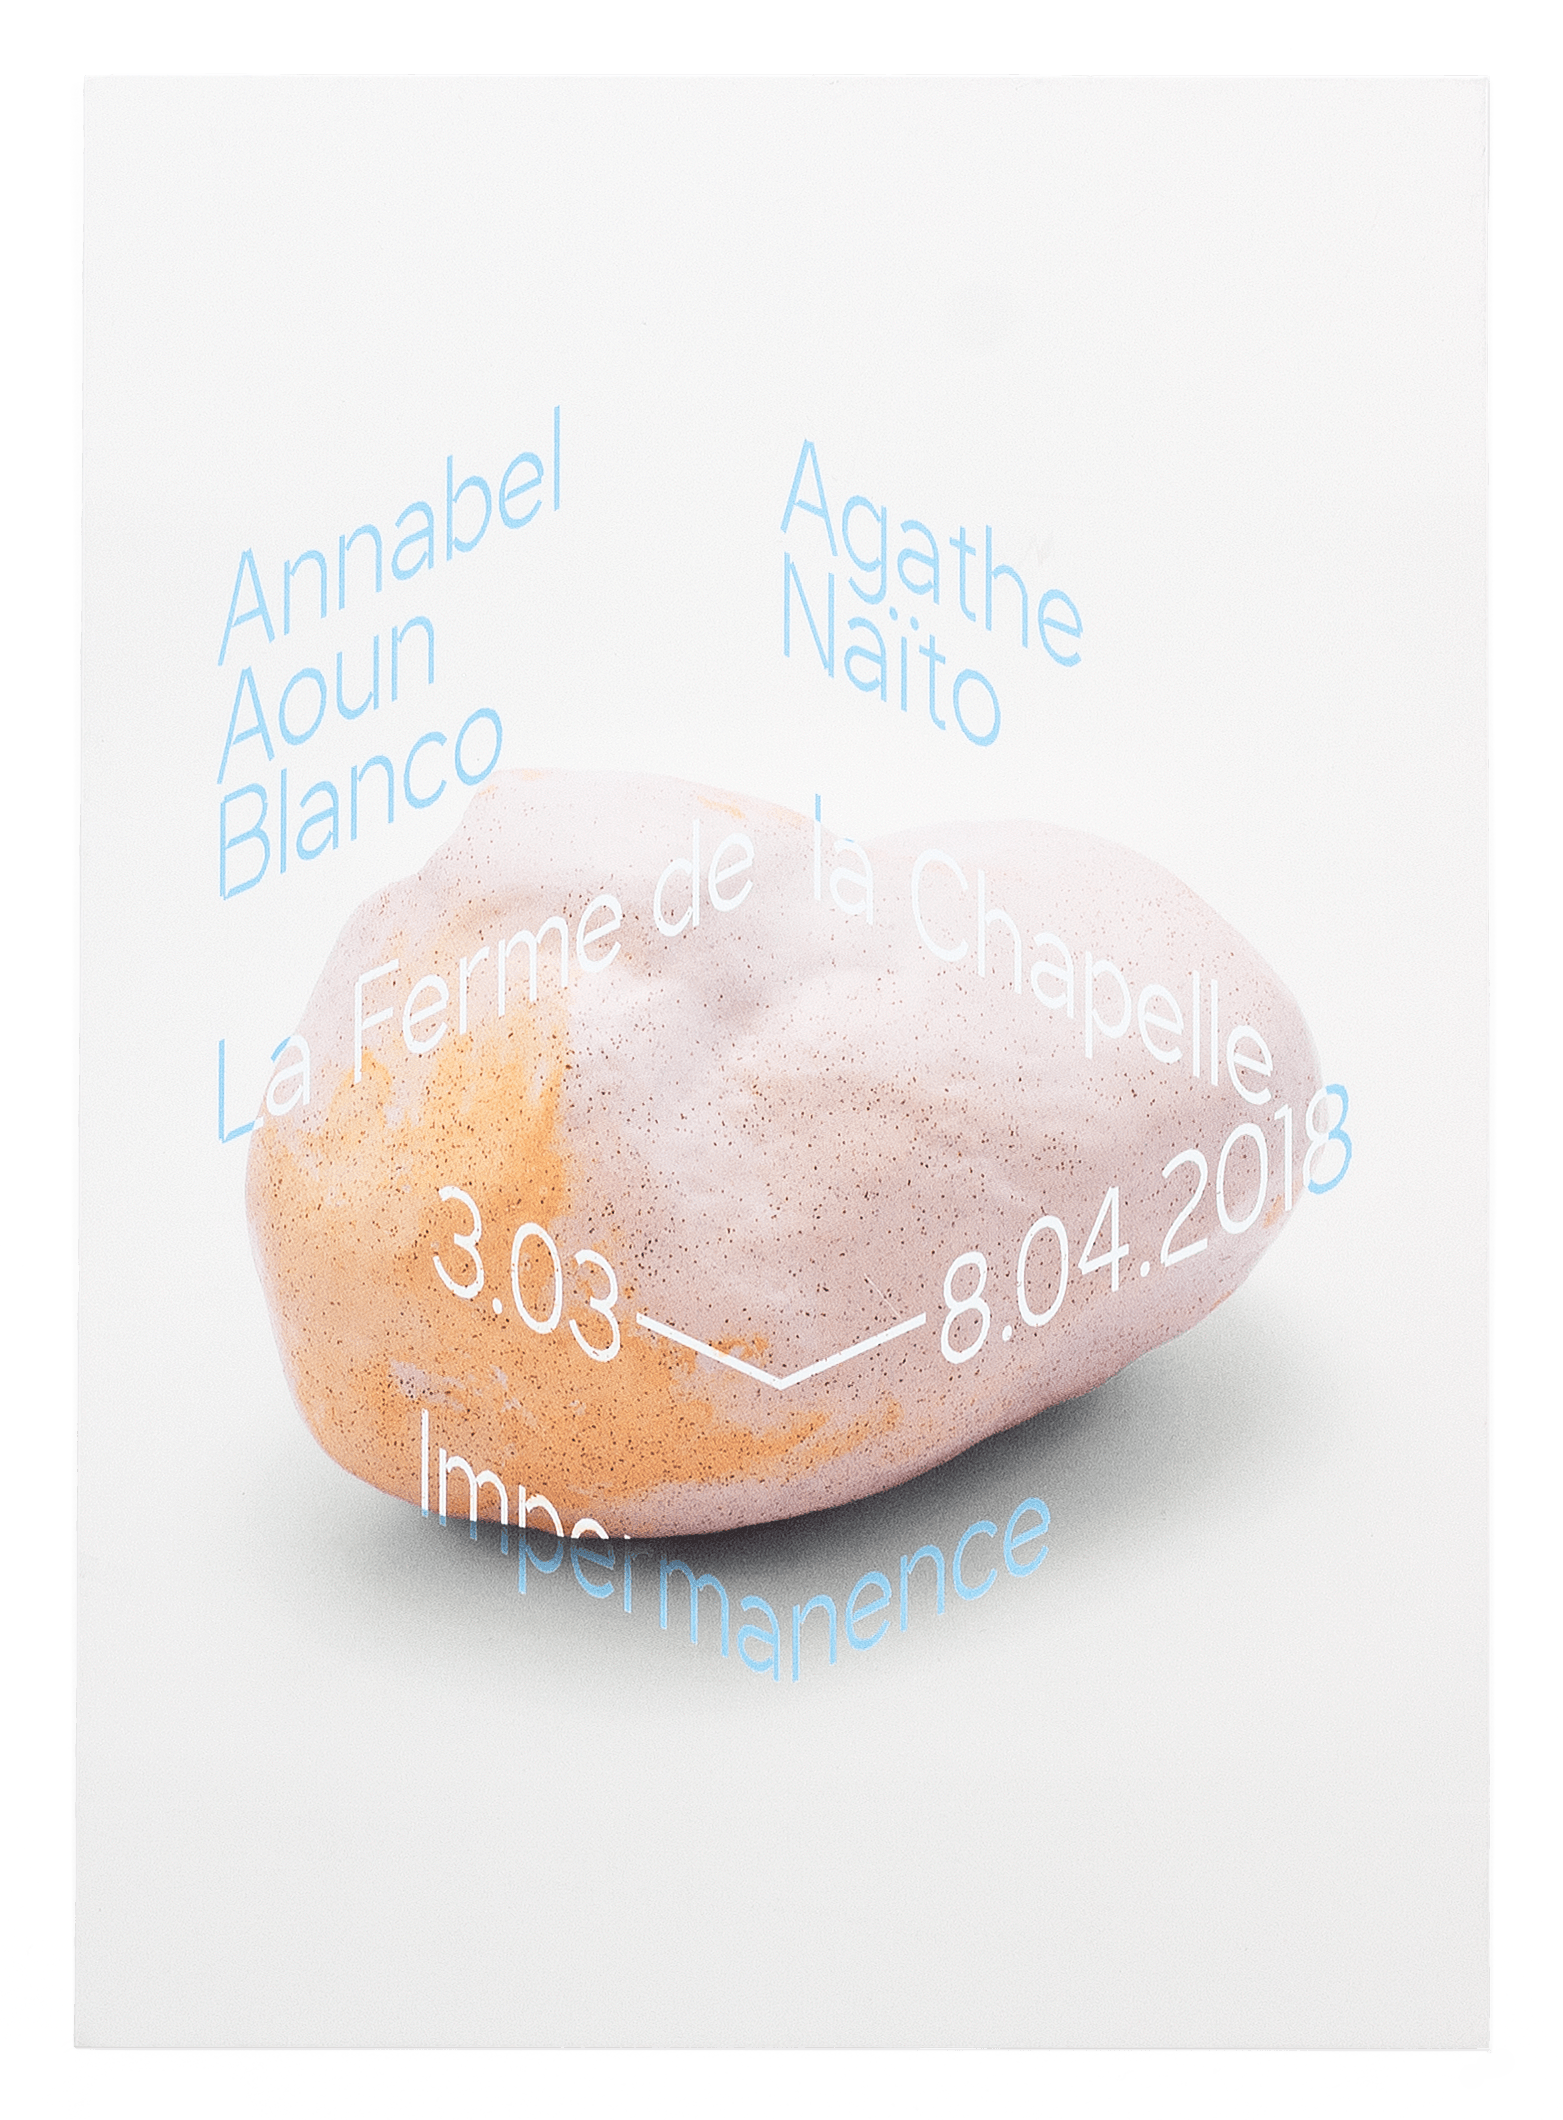 Carton d'invitation pour l'exposition de Annabel Aoun Blanco et Agathe Naïto